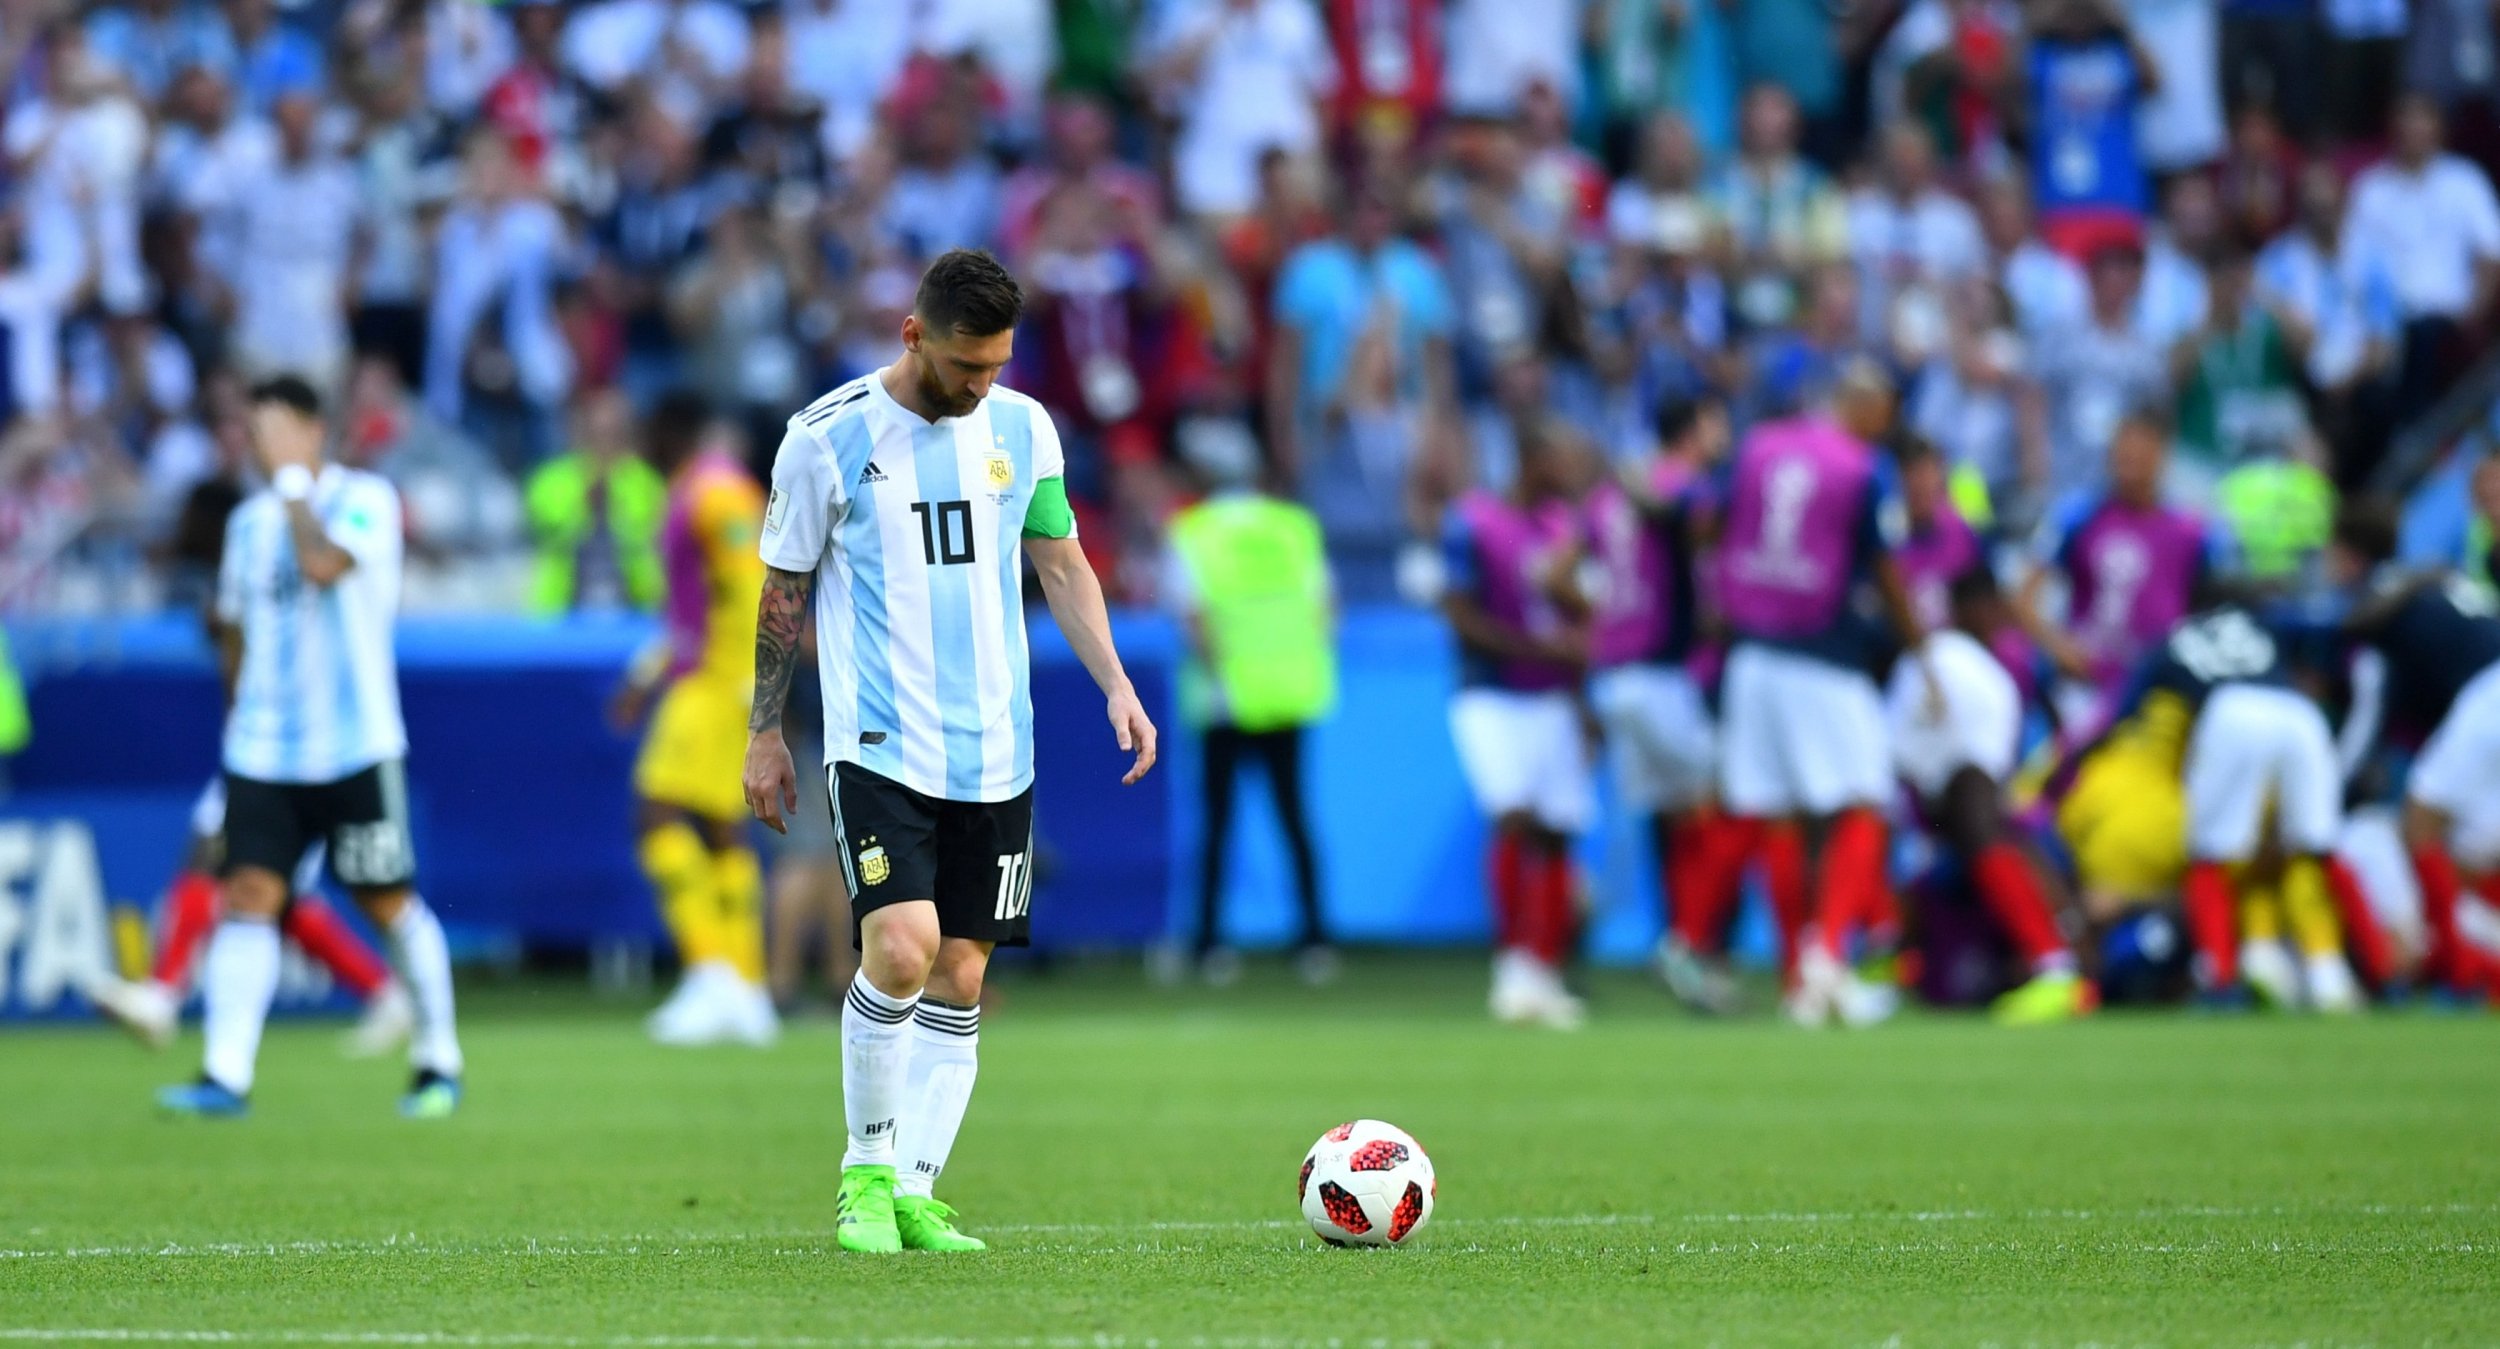 Dybala xứng đáng hơn 22 phút ở World Cup 2018 - Bóng Đá